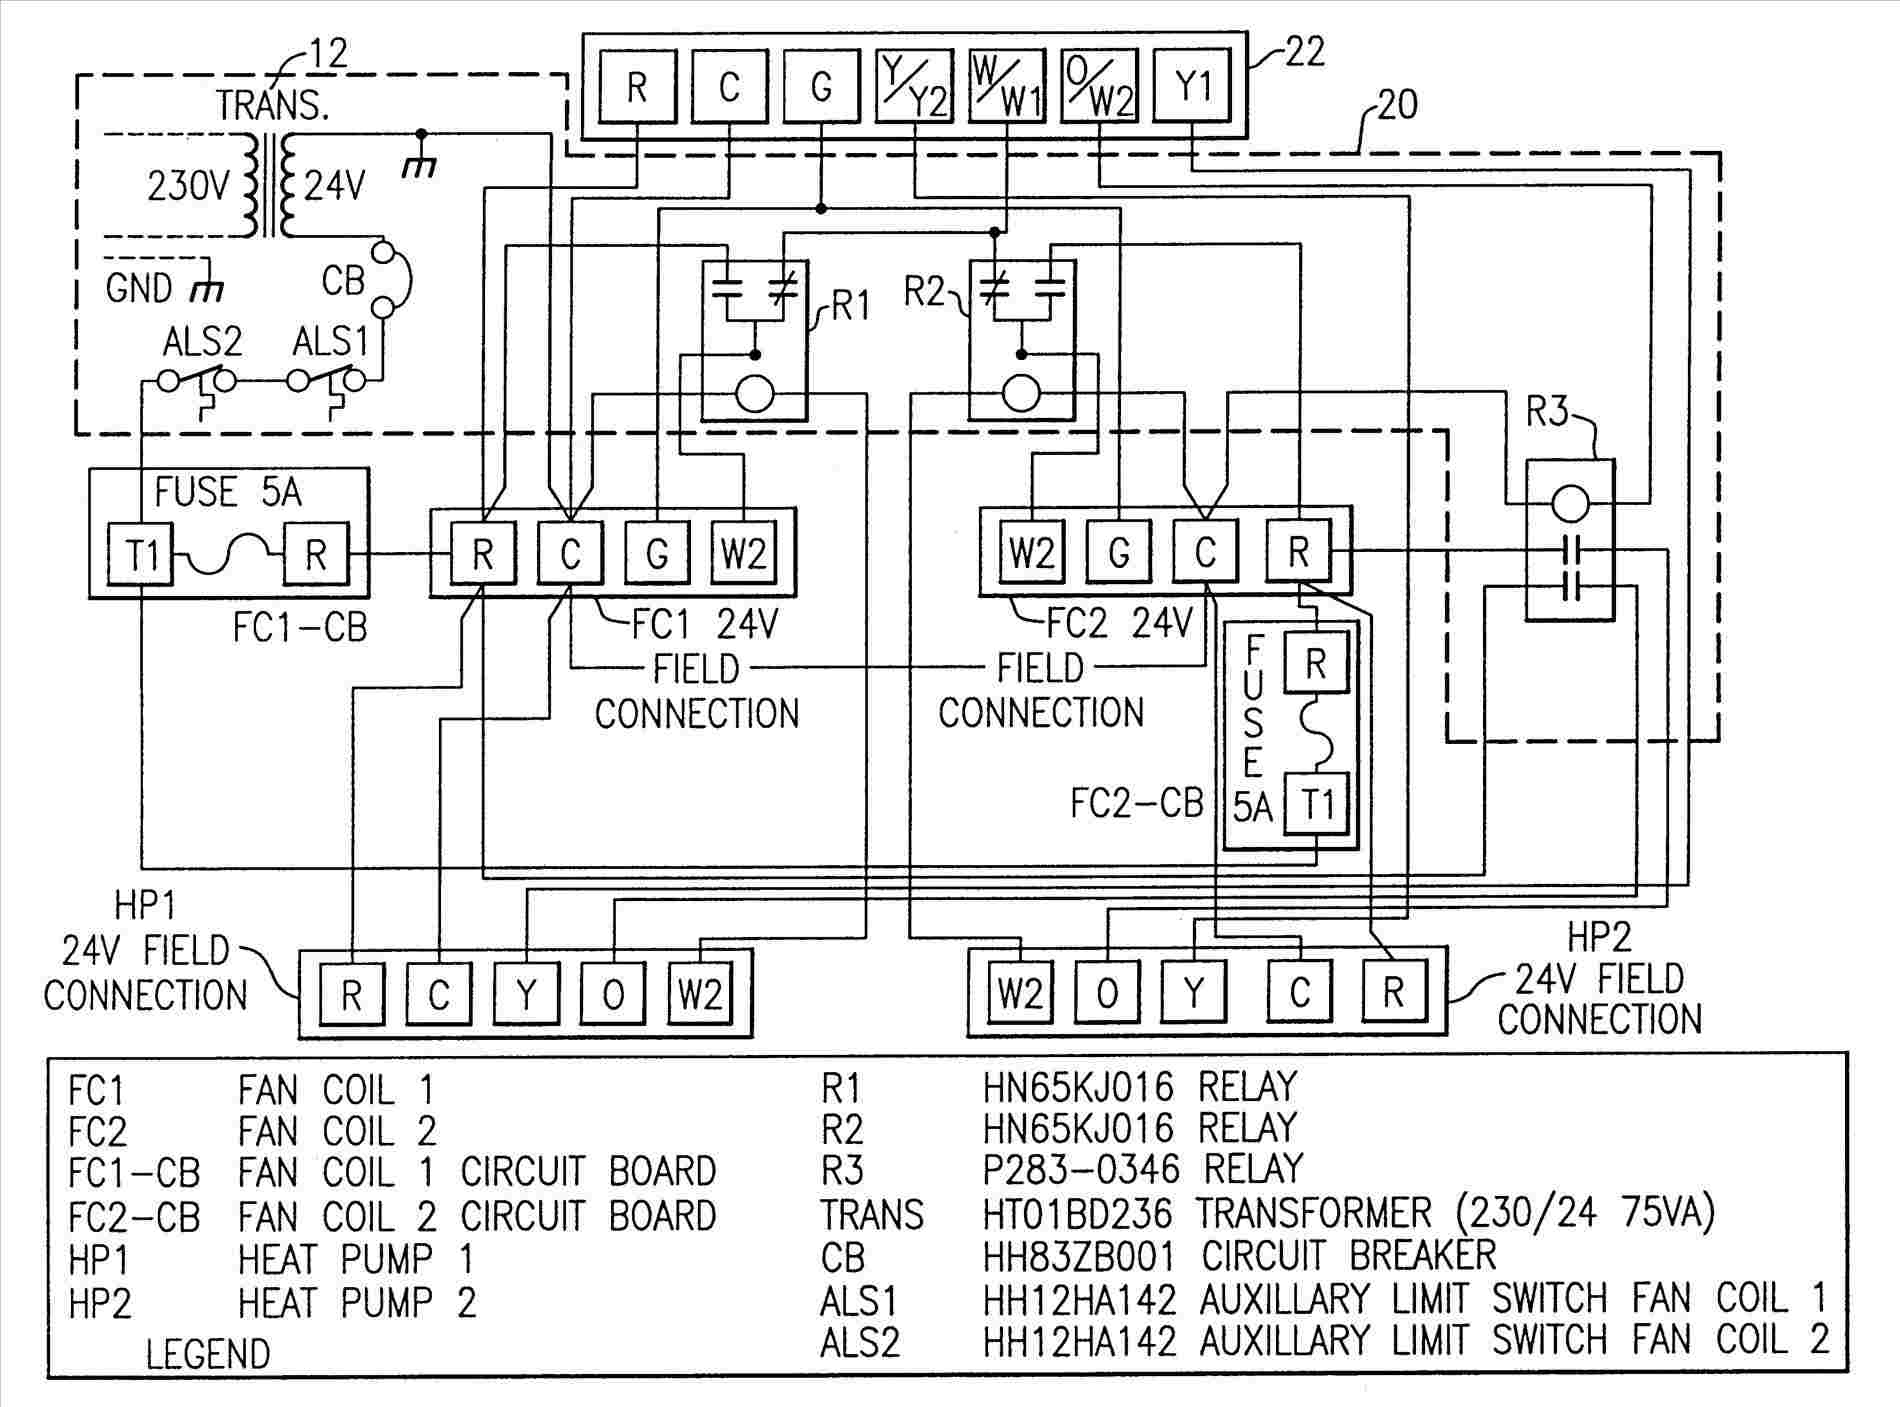 Singer Electric Furnace Wiring Diagram - Wiring Diagram Schema - Gas Furnace Wiring Diagram